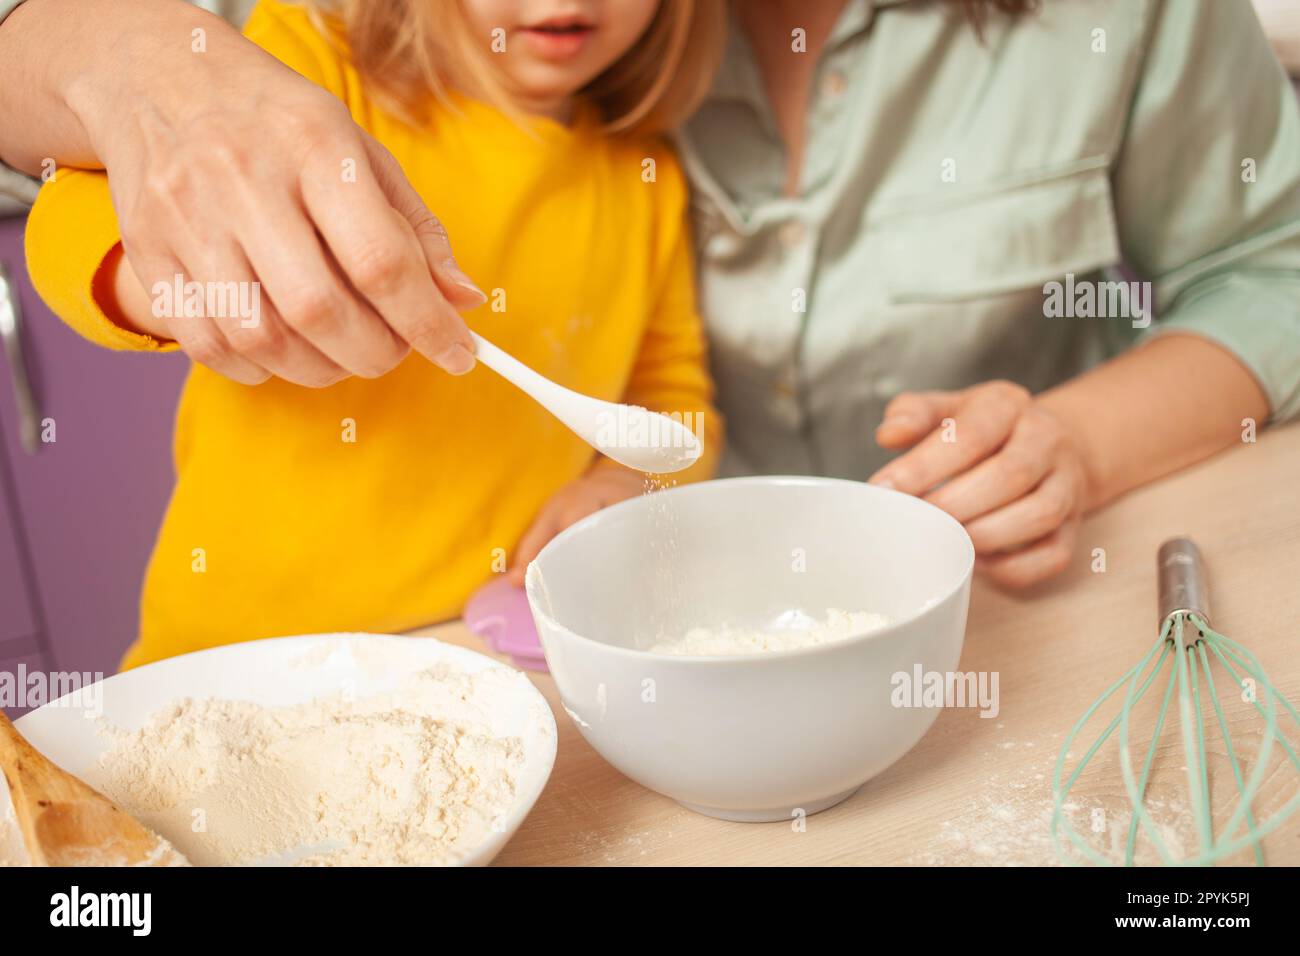 Großmutter und Enkelin bereiten Kuchenteig zu, verbringen Zeit miteinander, Familienbeziehungen, Liebe. Gieße Zucker in eine Tasse. Stockfoto